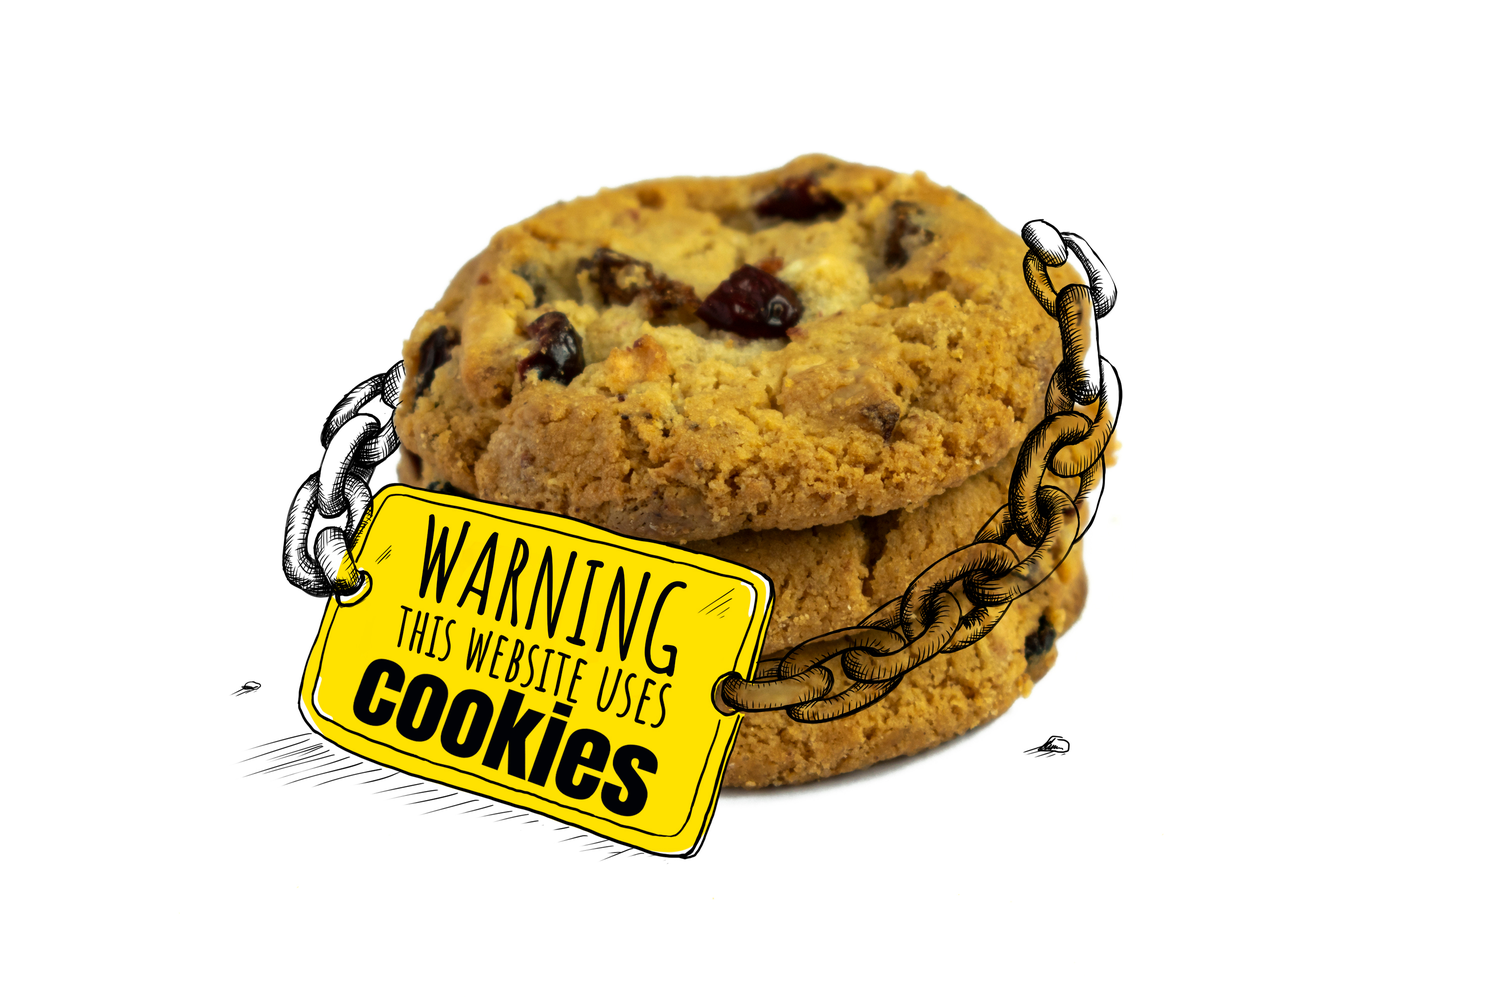 Запись cookies. Файлы cookie. Файлы кукис. Cookies в интернете. Печеньки куки.